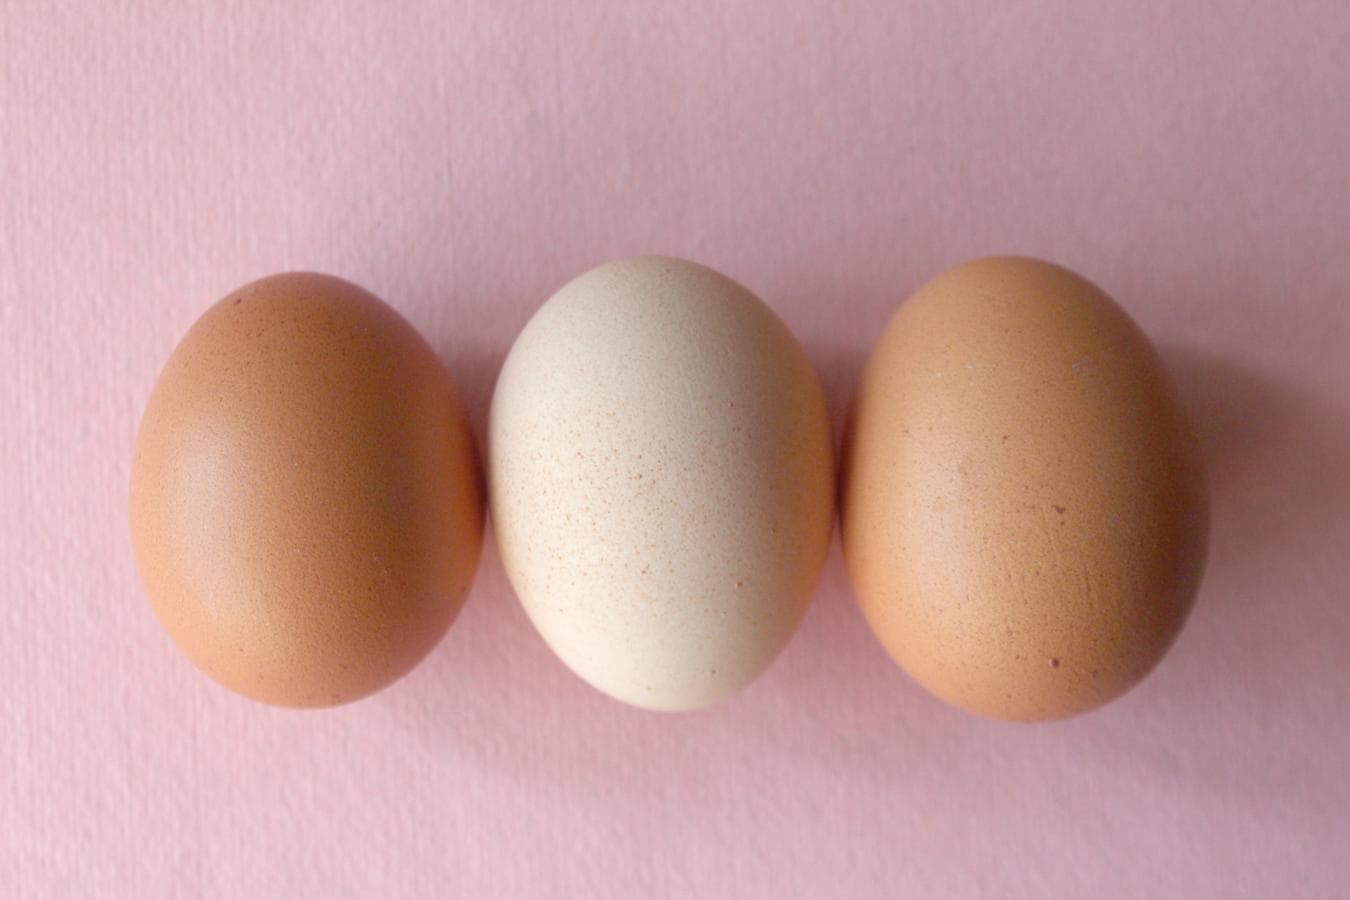 Huevos. el huevo aporta una amplia gama de vitaminas (A, B2, Biotina, B12, D, E y K ) y minerales, entre los que destacan el  fósforo, hierro, yodo, zinc y selenio, siendo este último de 86,6 ug. Además, la biotina que contiene ayuda a proteger la piel y a mantener las funciones corporales y la riboflavina es importante para el crecimiento corporal y los glóbulos rojos.